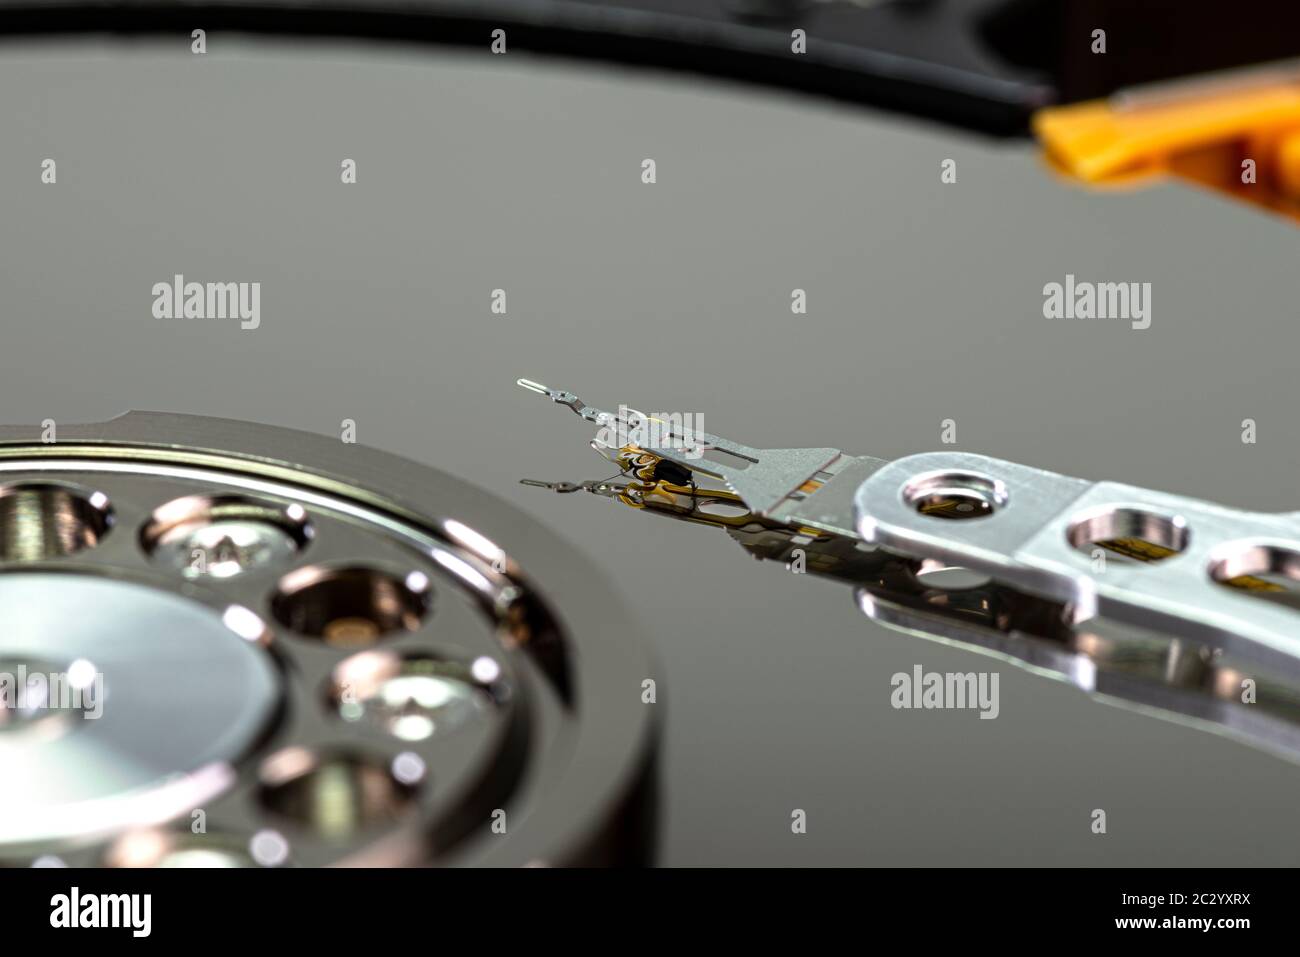 Macro-prise d'une aiguille magnétique sur un plateau de disque dur, disque dur ouvert, surface parfaitement propre. Banque D'Images